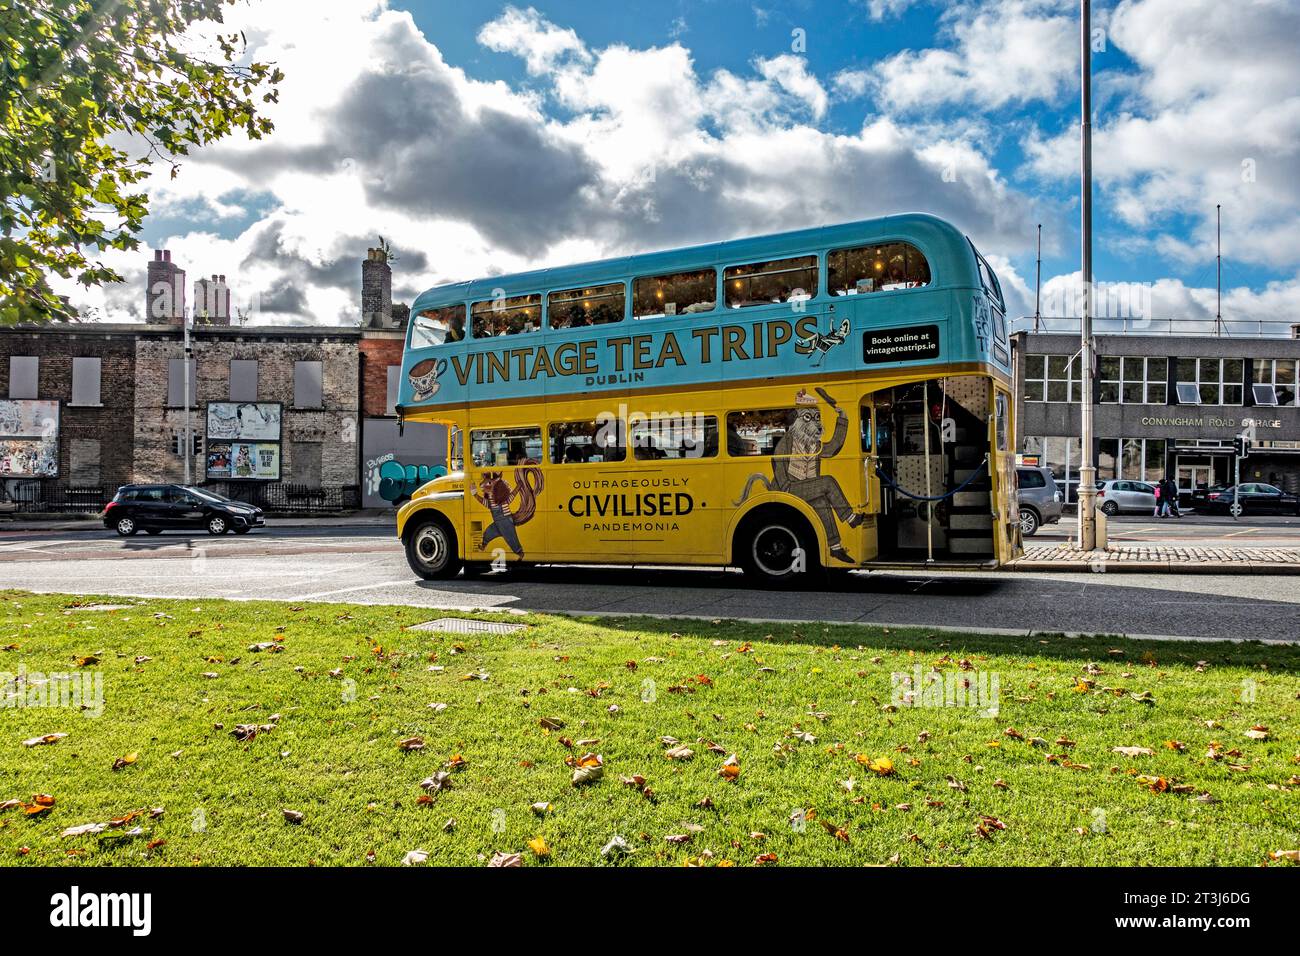 Un autobus turistico della città, Vintage Tea Trips, a Dublino, Irlanda, serve tè pomeridiano, un modo unico per vedere la città. Foto Stock